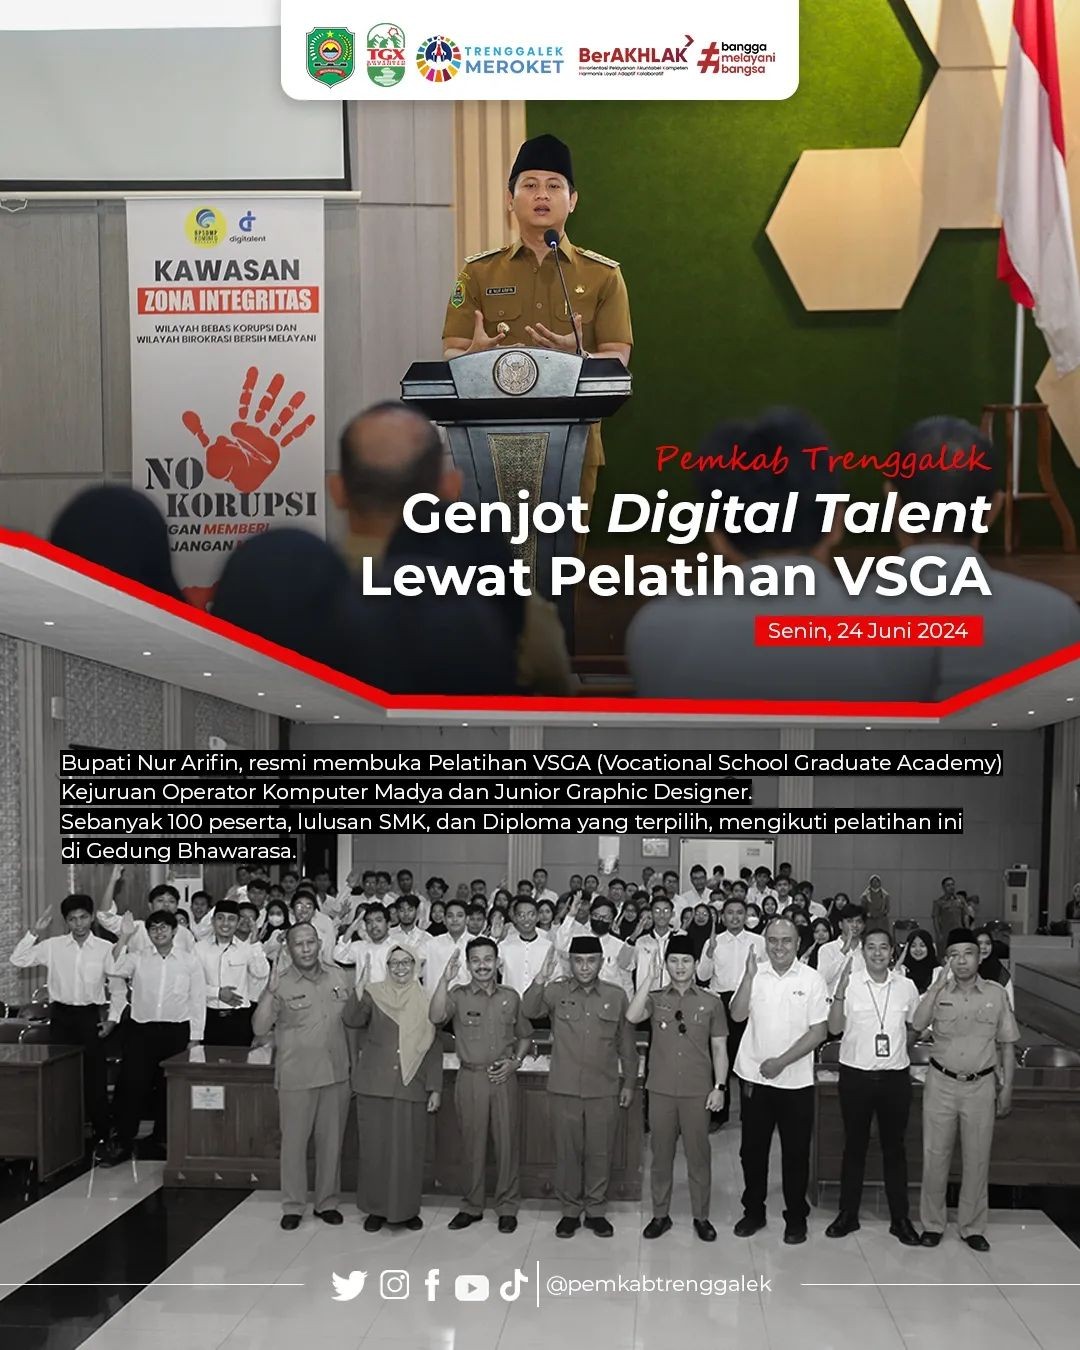 Pemkab Trenggalek Genjot Digital Talent Lewat Pelatihan VSGA